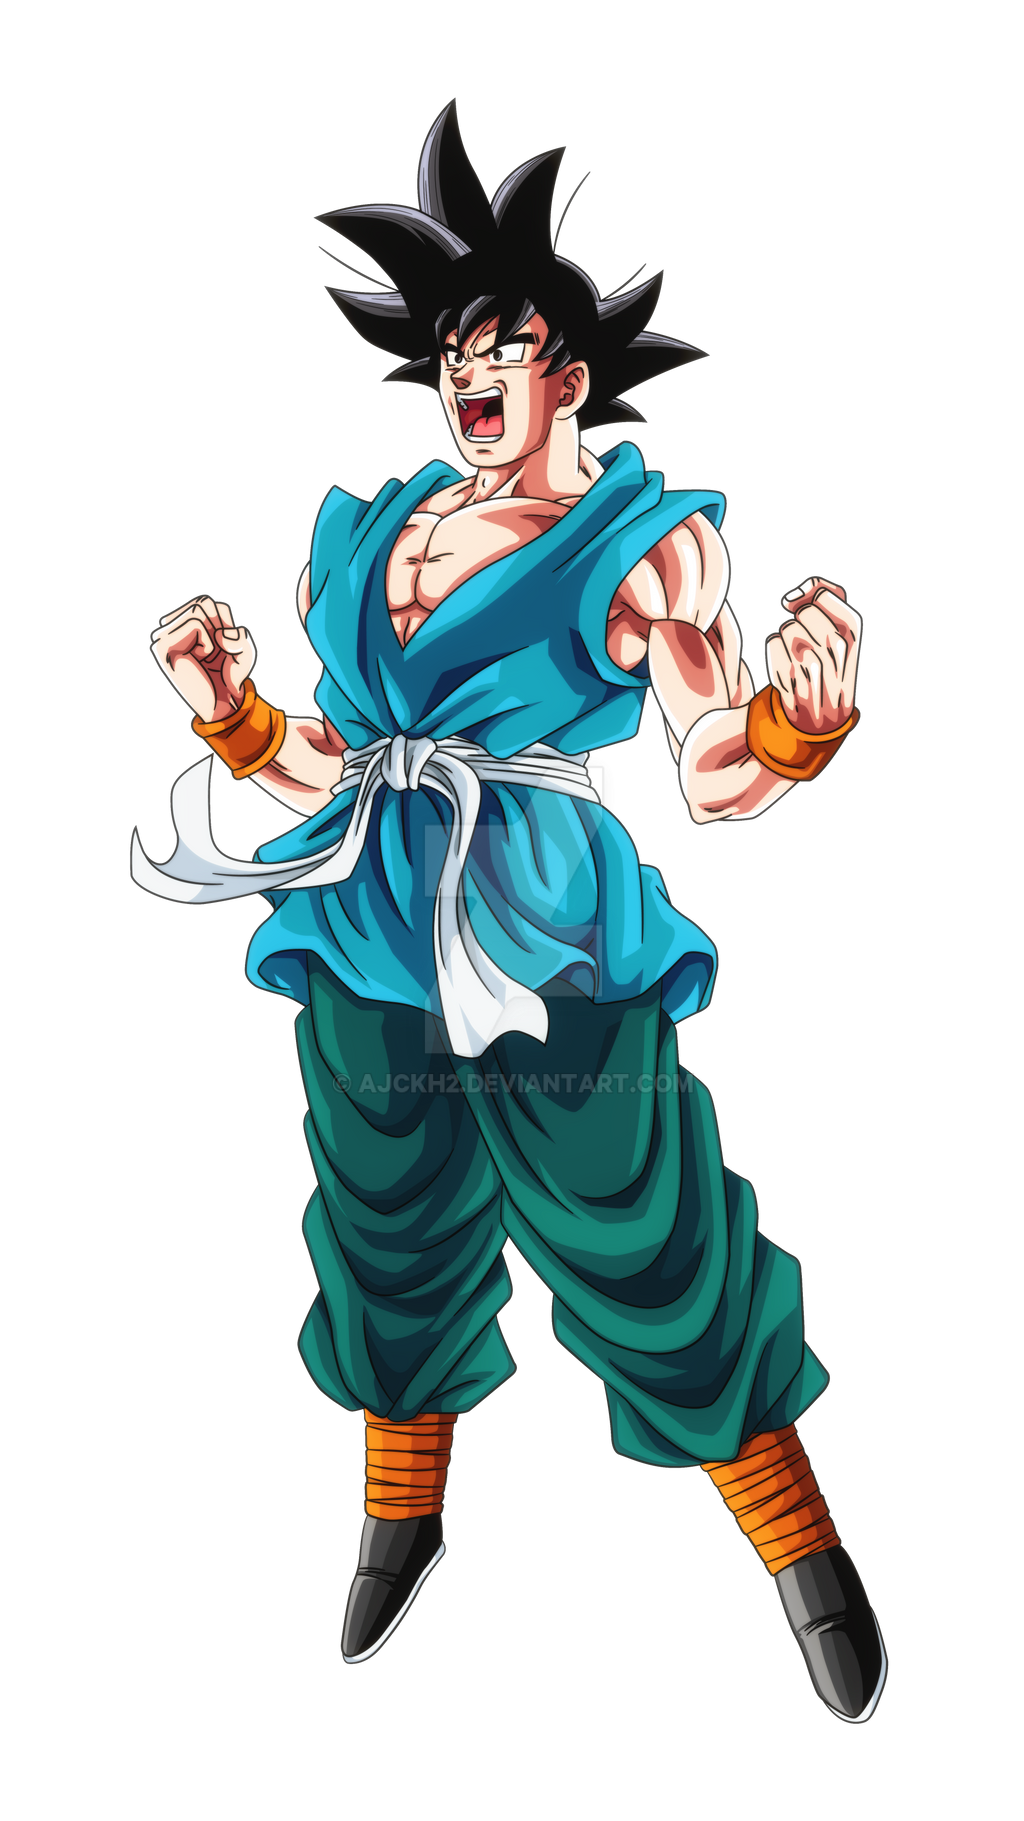 Son Goku (Super Saiyajin) by ALIX2002 on DeviantArt